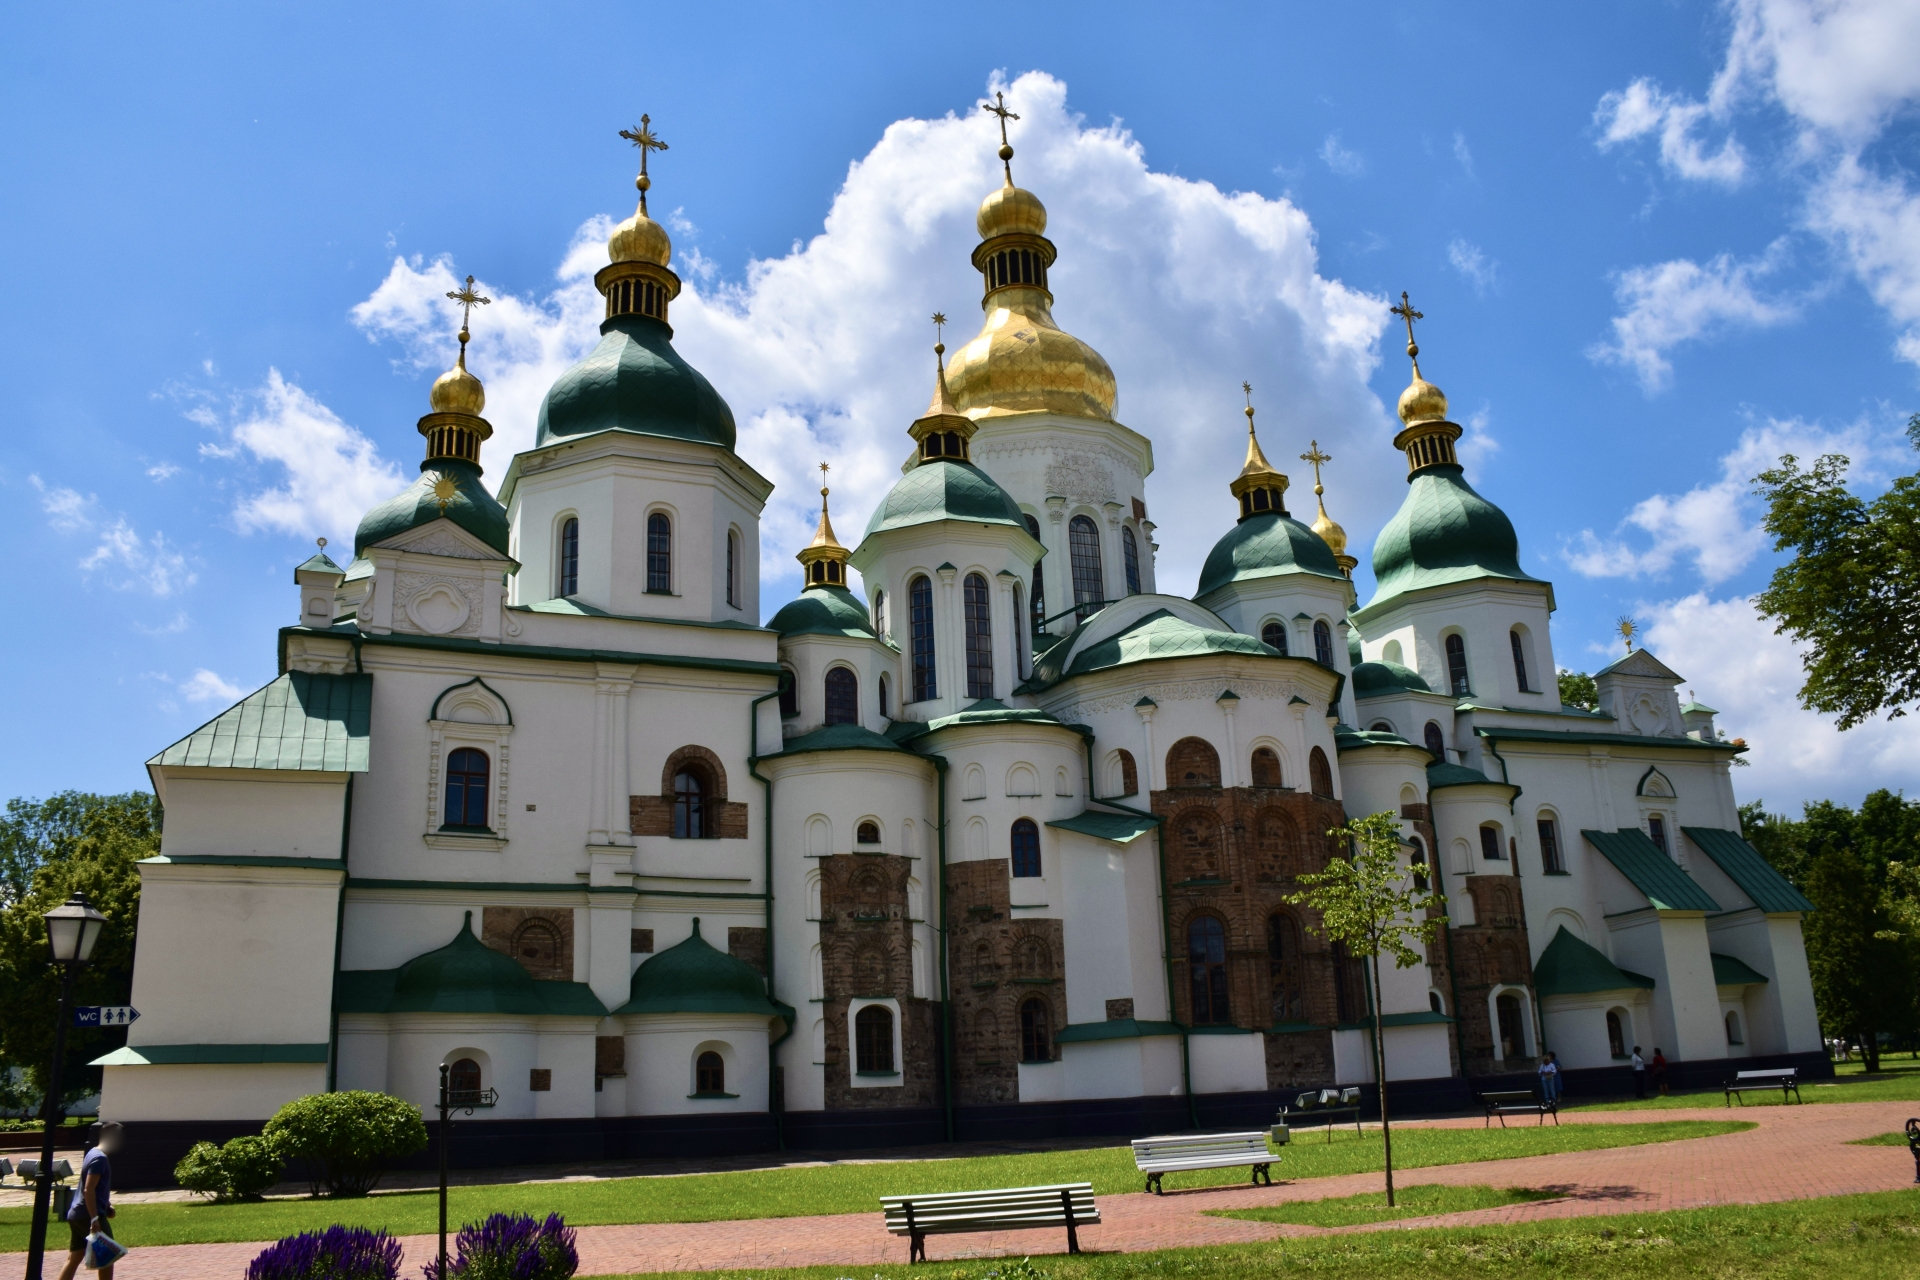 キエフの聖ソフィア大聖堂と関連する修道院群及びキエフ・ペチェールシク大修道院